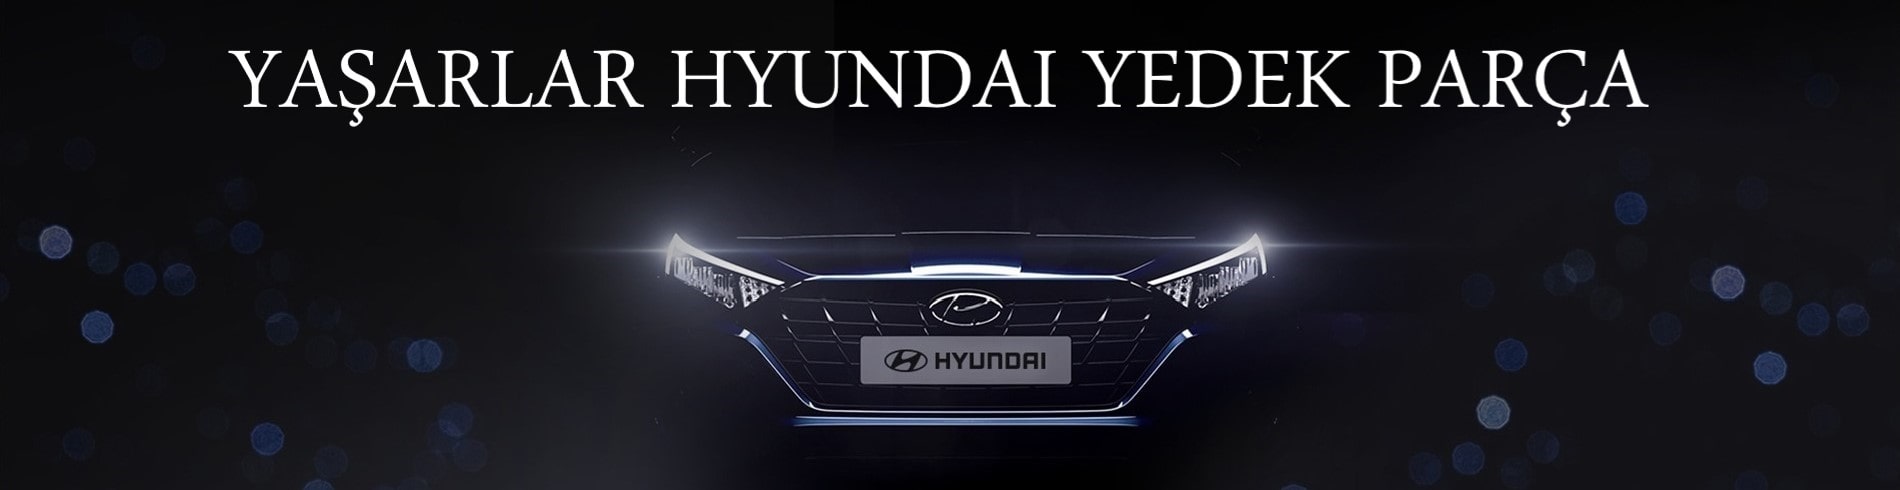 Yaşarlar Hyundai Yedek Parça